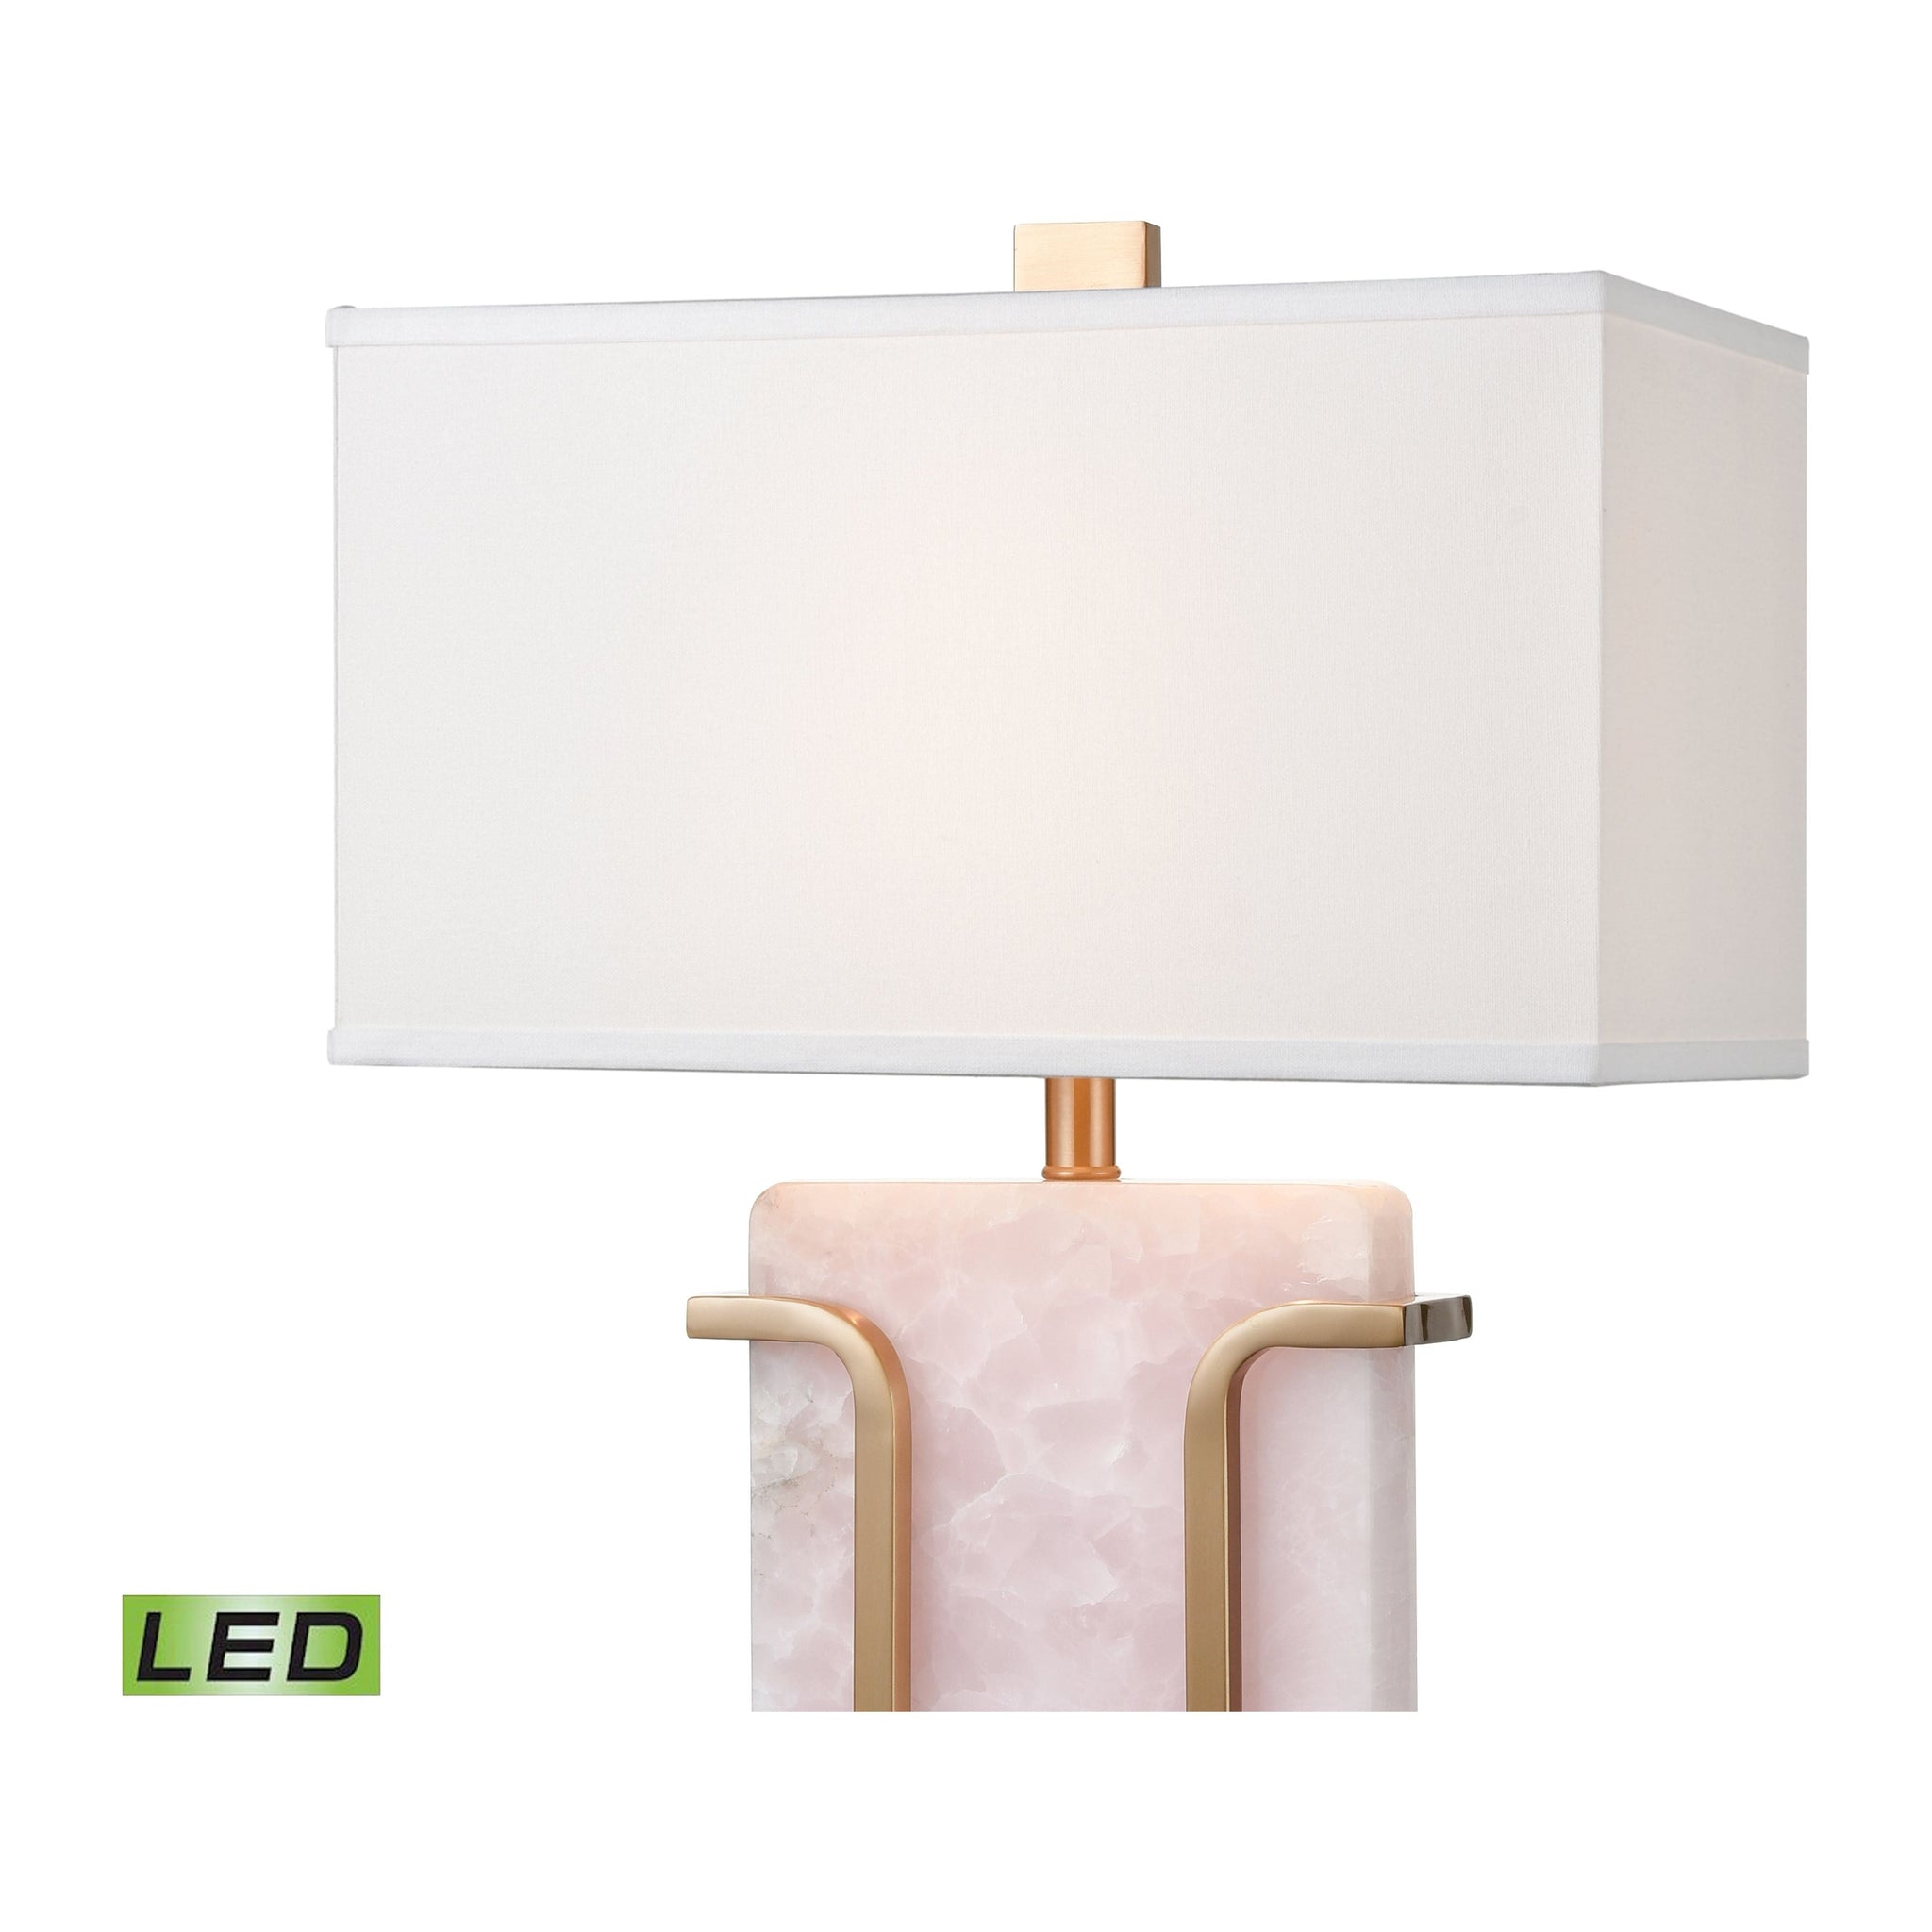 Archean 29" High 1-Light Table Lamp